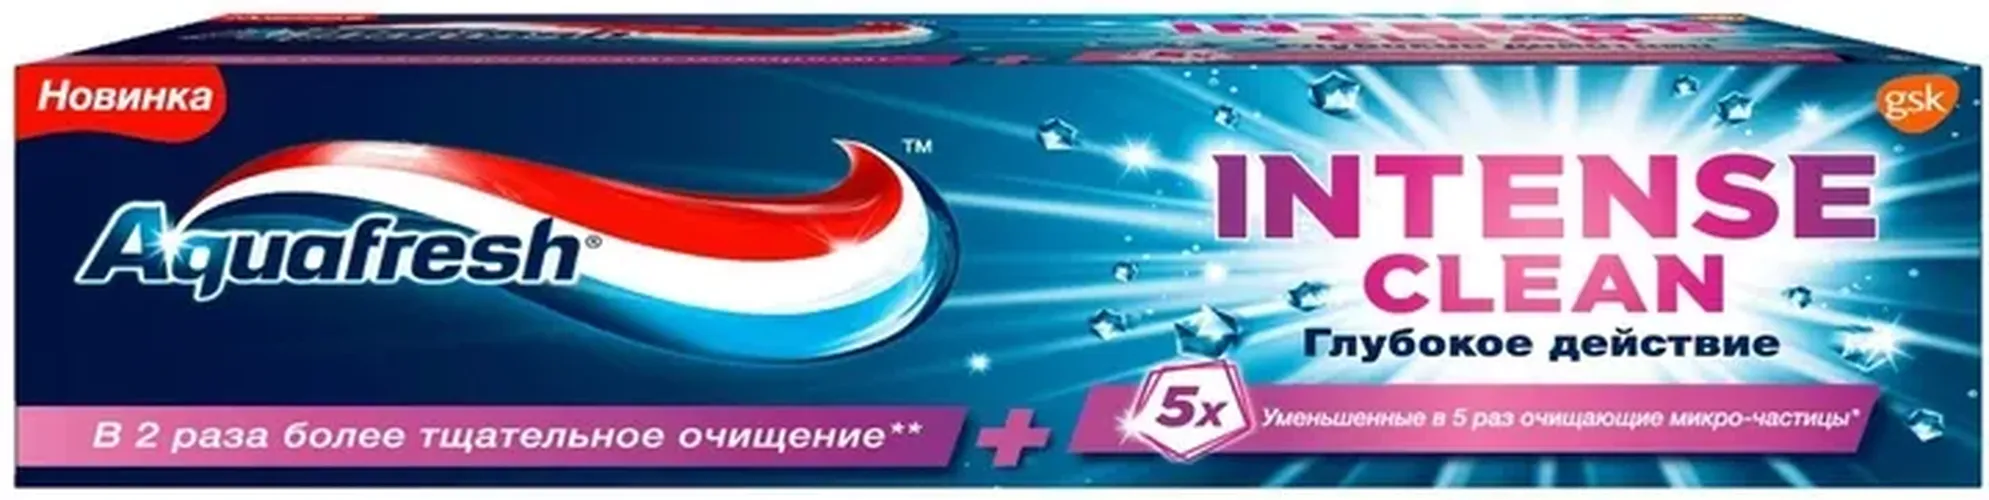 Зубная паста Aquafresh Интенсивное очищение, 75 мл, купить недорого